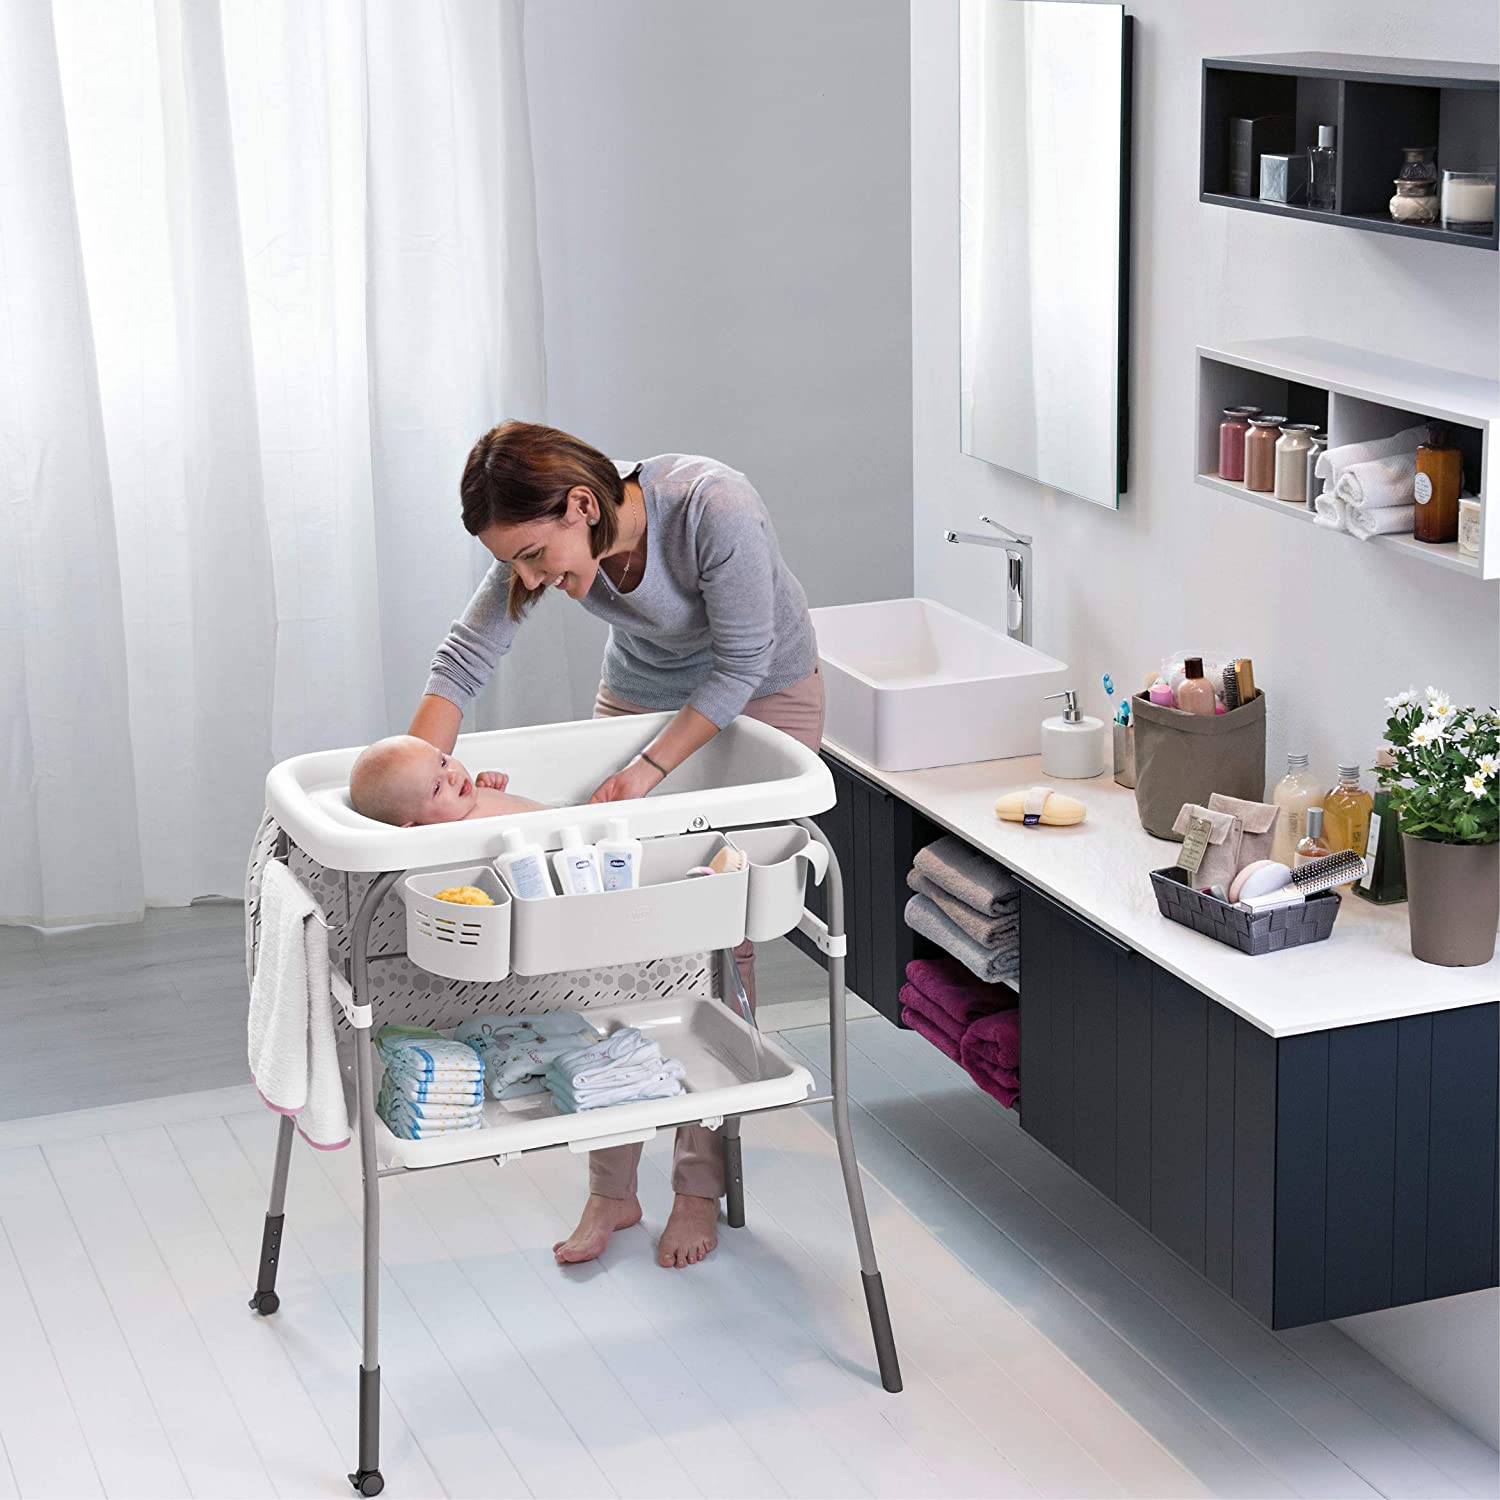 Stokke Flexi Bath XL, color blanco, espaciosa bañera plegable para bebé,  ligera y fácil de almacenar, cómoda de usar en casa o de viaje, ideal para